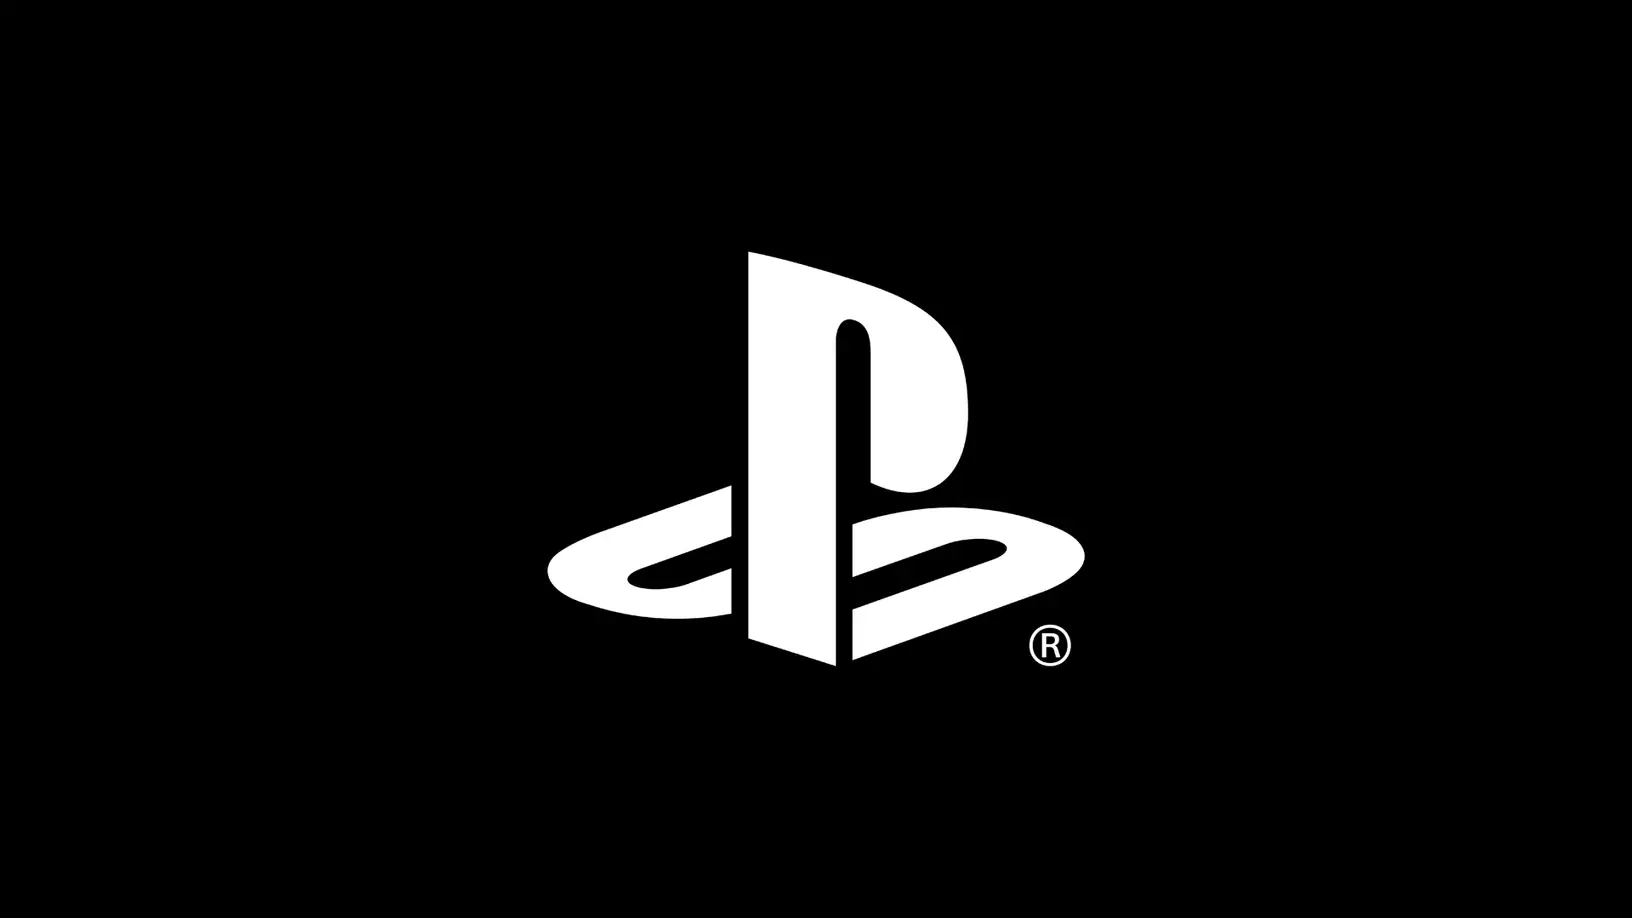 PlayStation 5 (PS5) aumentó de precio en varias regiones, incluyendo Latinoamérica